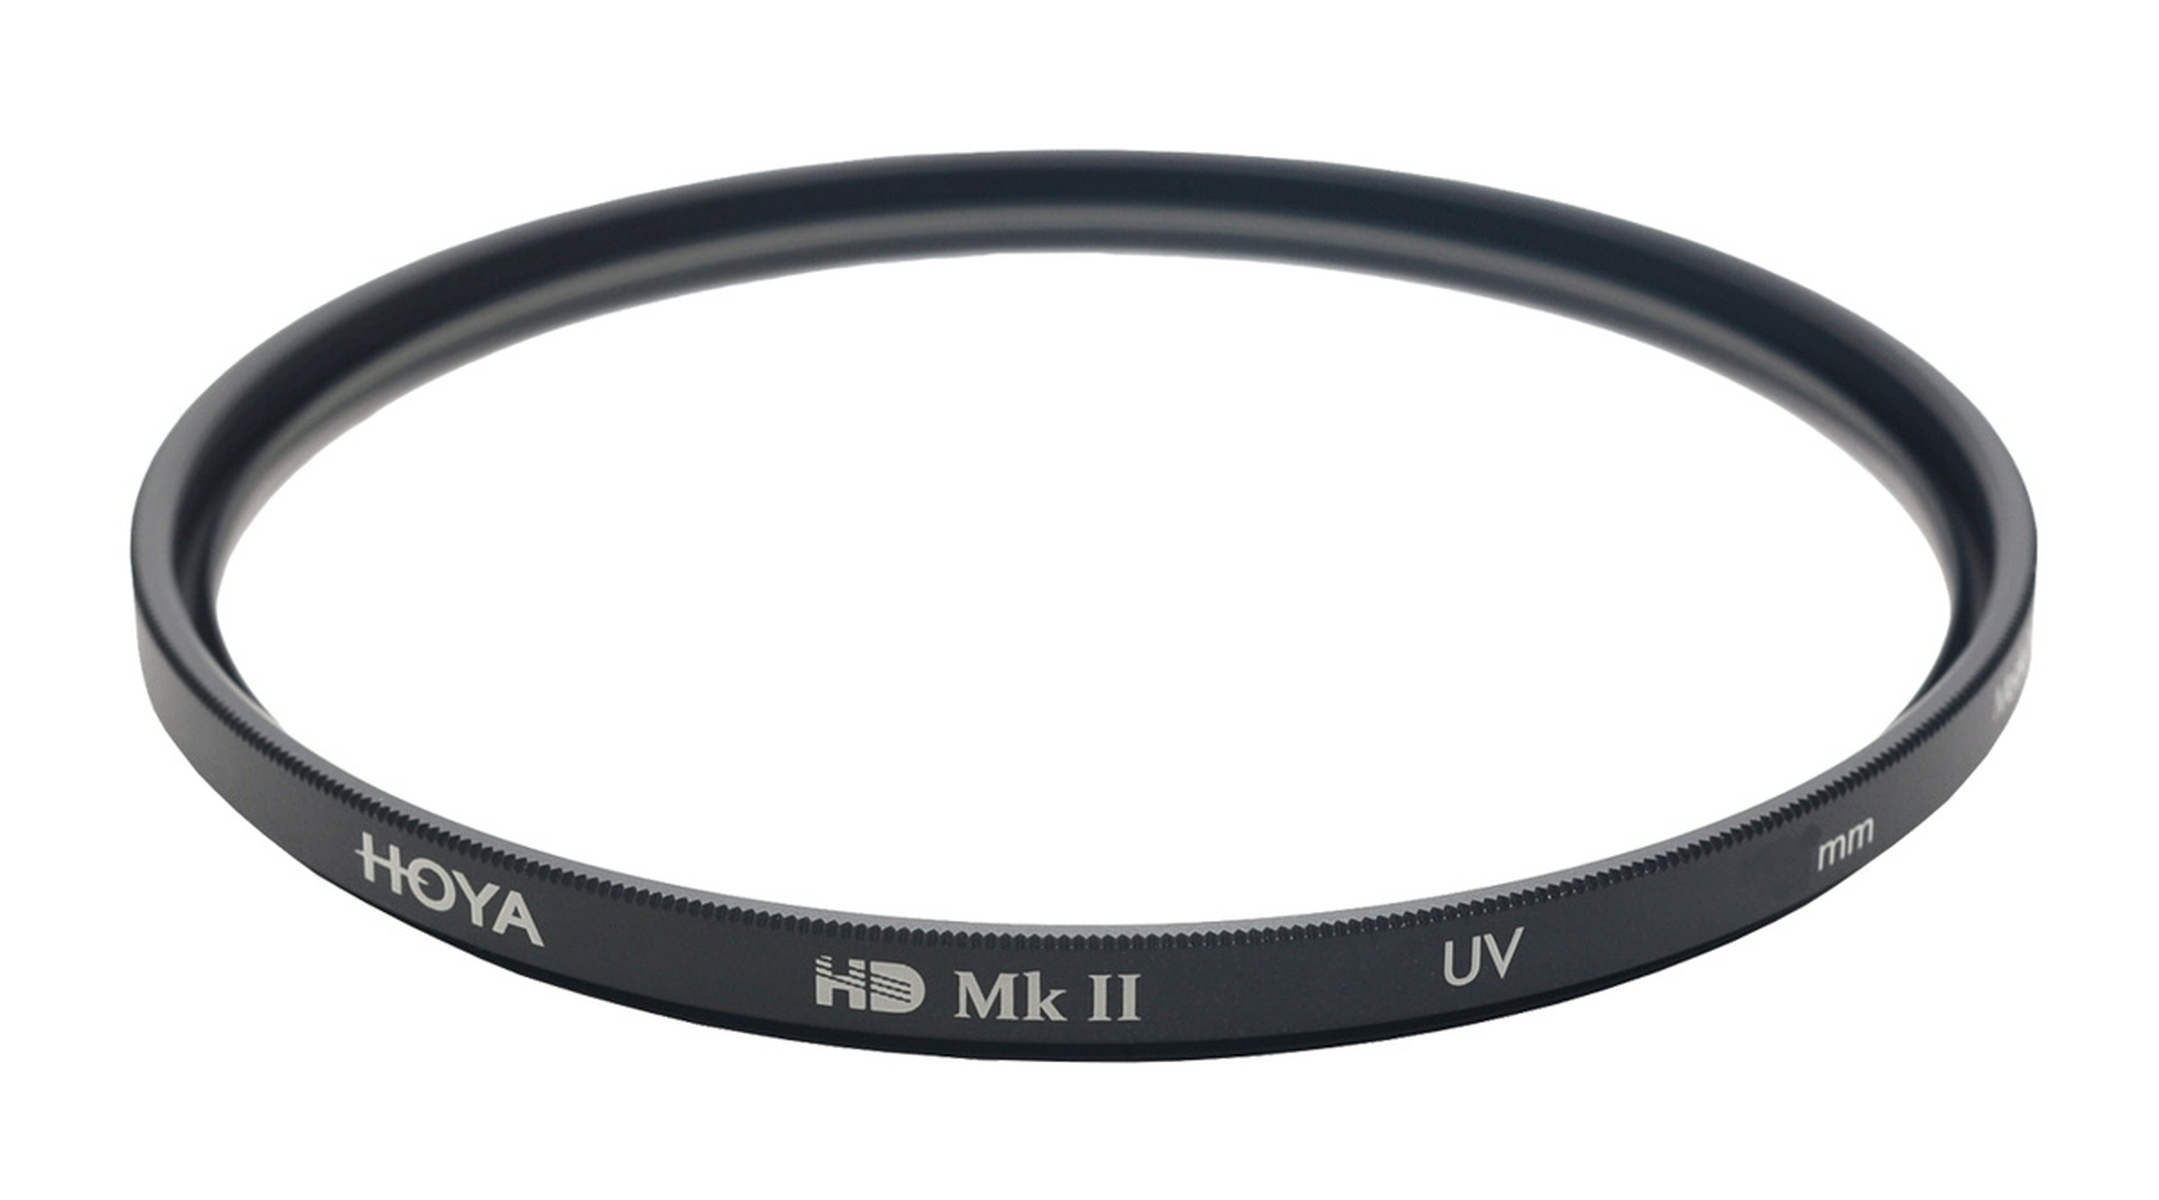 Filter 62mm HD UV UV Filter 62 HOYA mm MkII